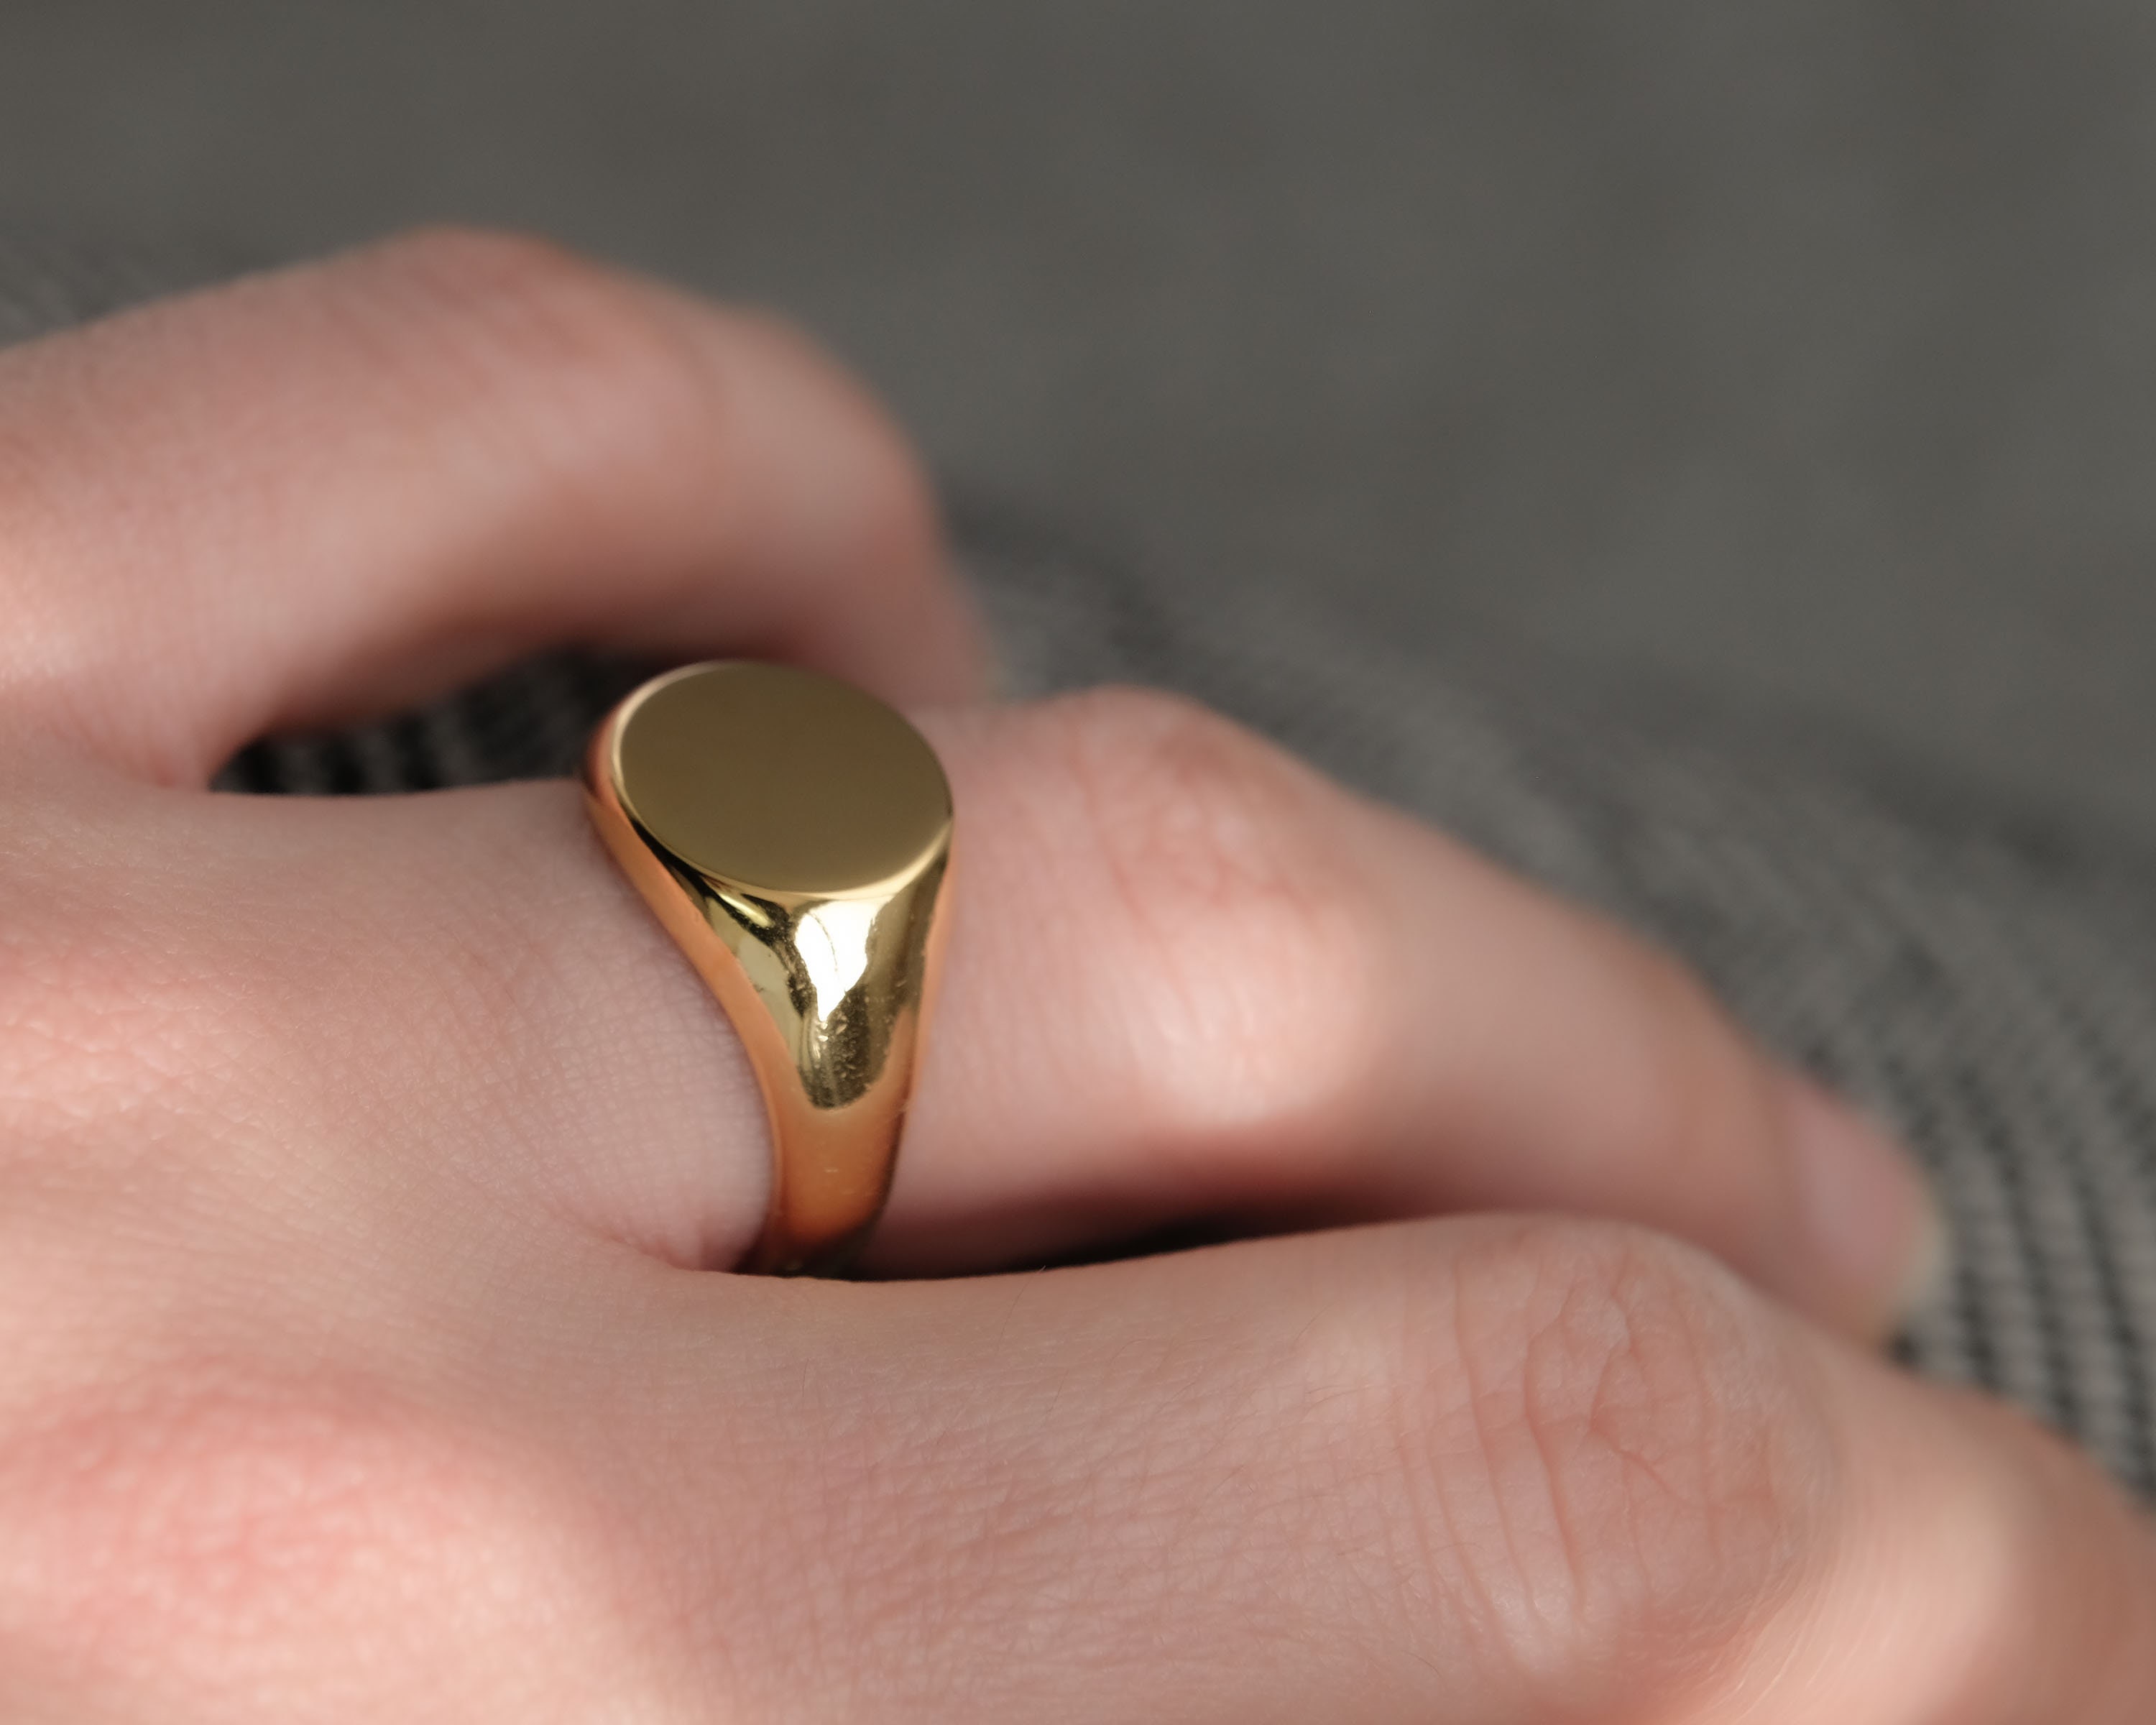 Round Signet Ring,Statement Ring,Designer Gift for her Sunbeam Signet Ring for women,18K Gold Signet Ring,Oval Signet Ring,Gold Filled Band